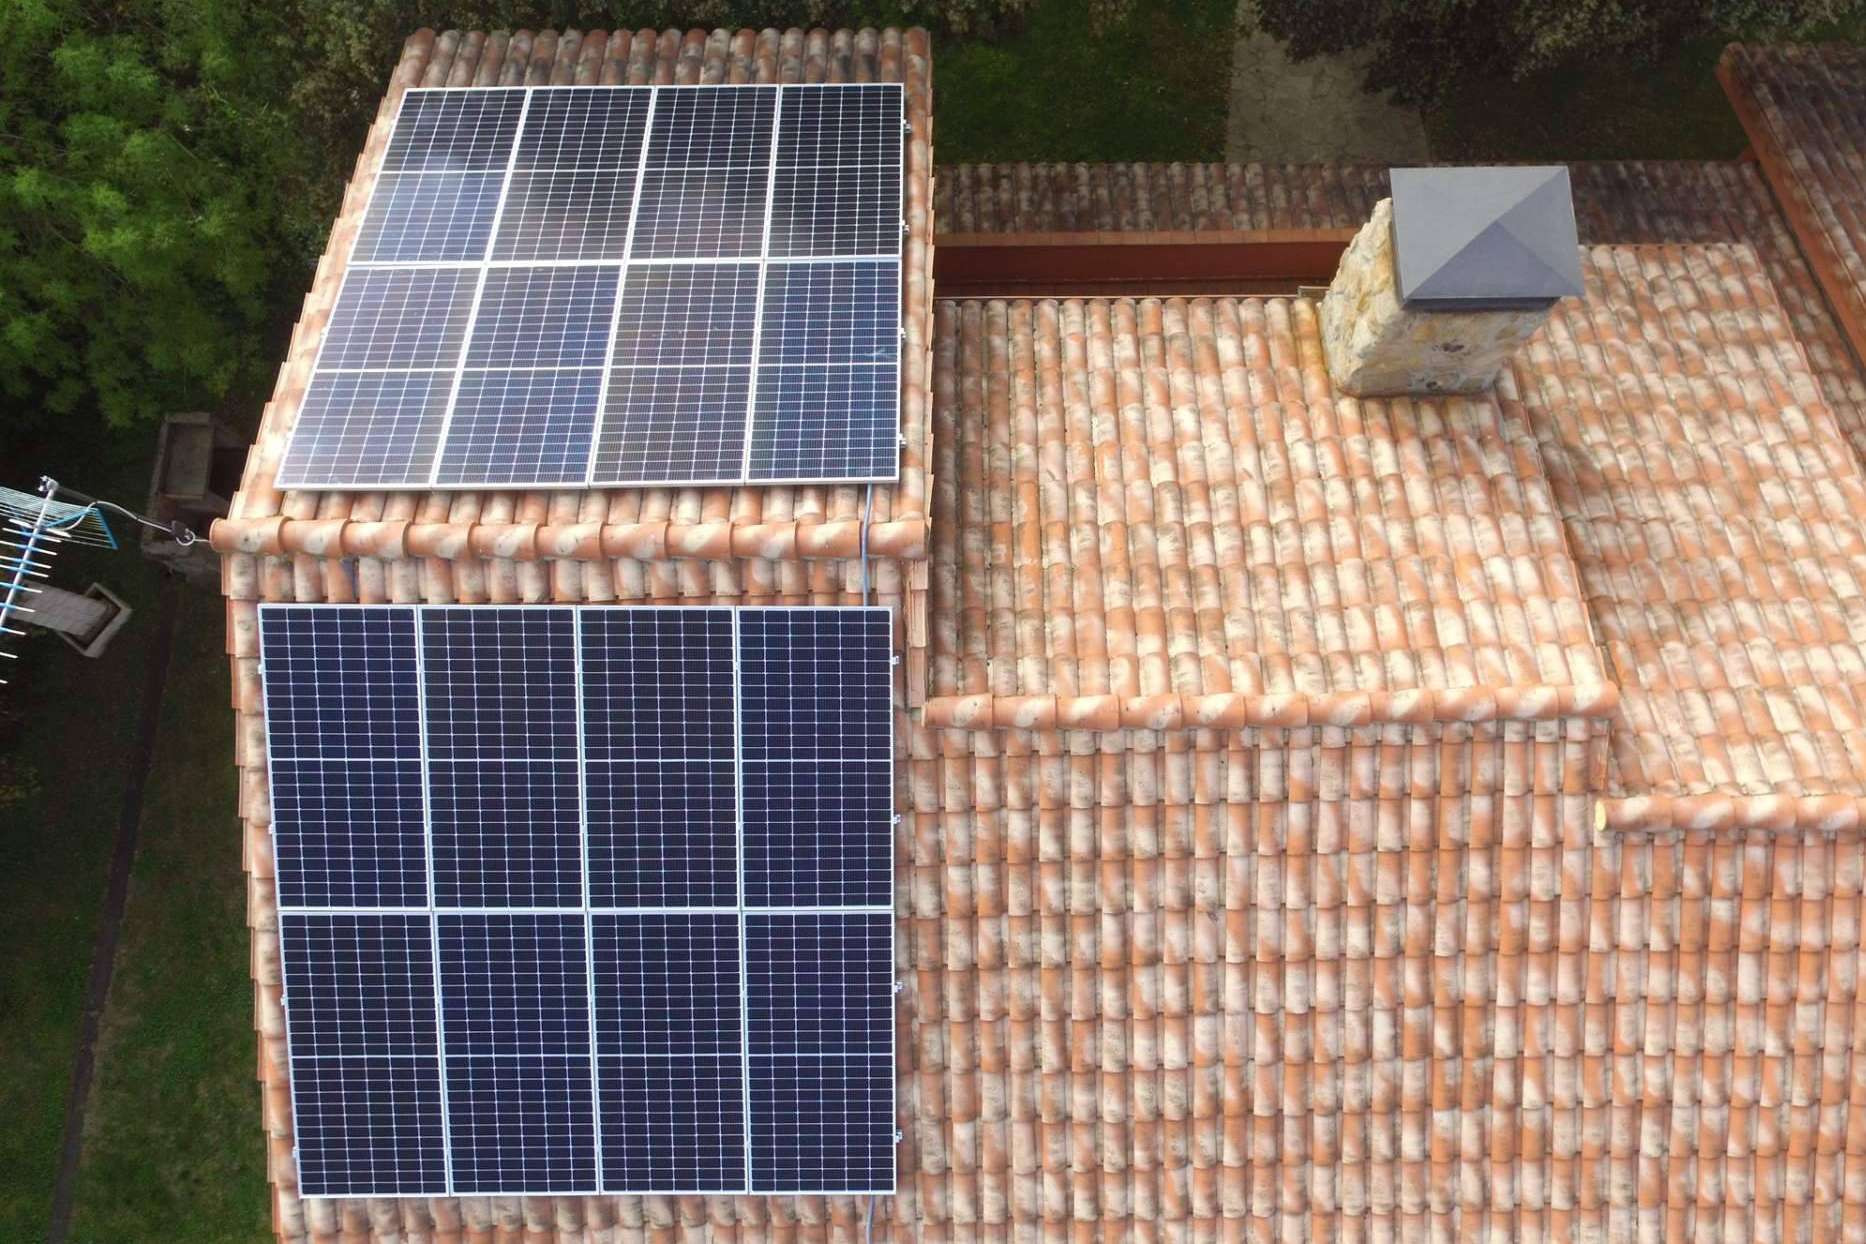  Ecogreen destaca las principales características del actual mercado fotovoltaico 